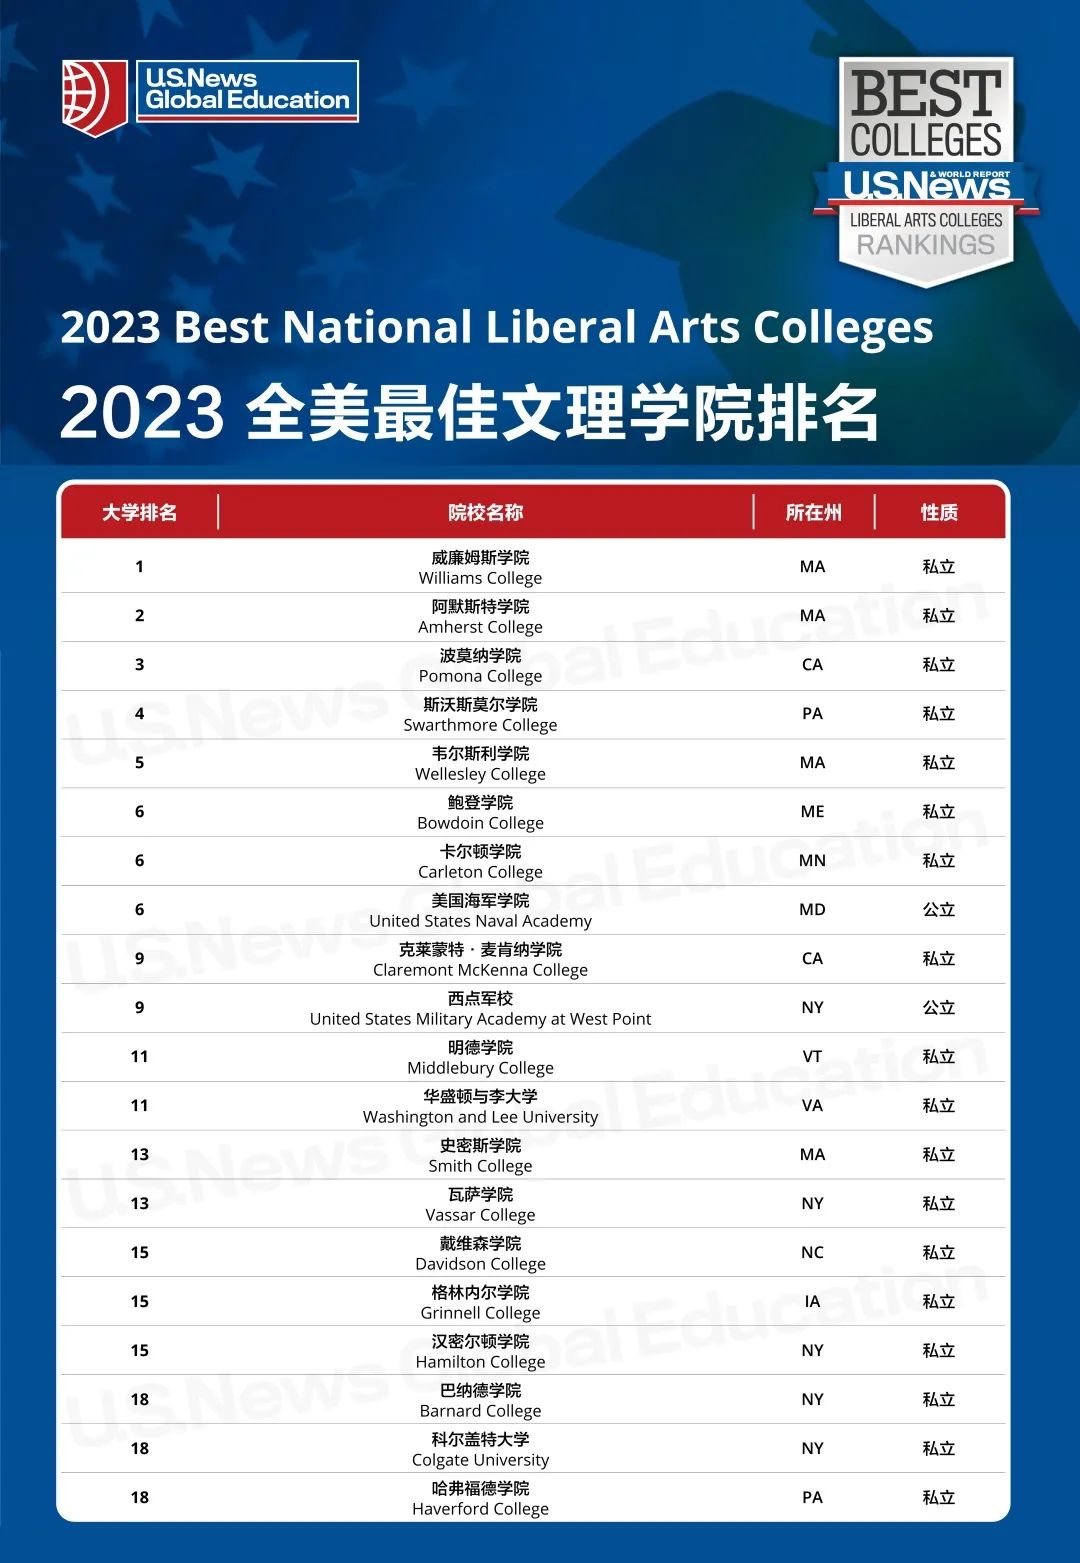 2023年U.S.News美国最佳文理学院排名，阿默斯特学院“万年第二”